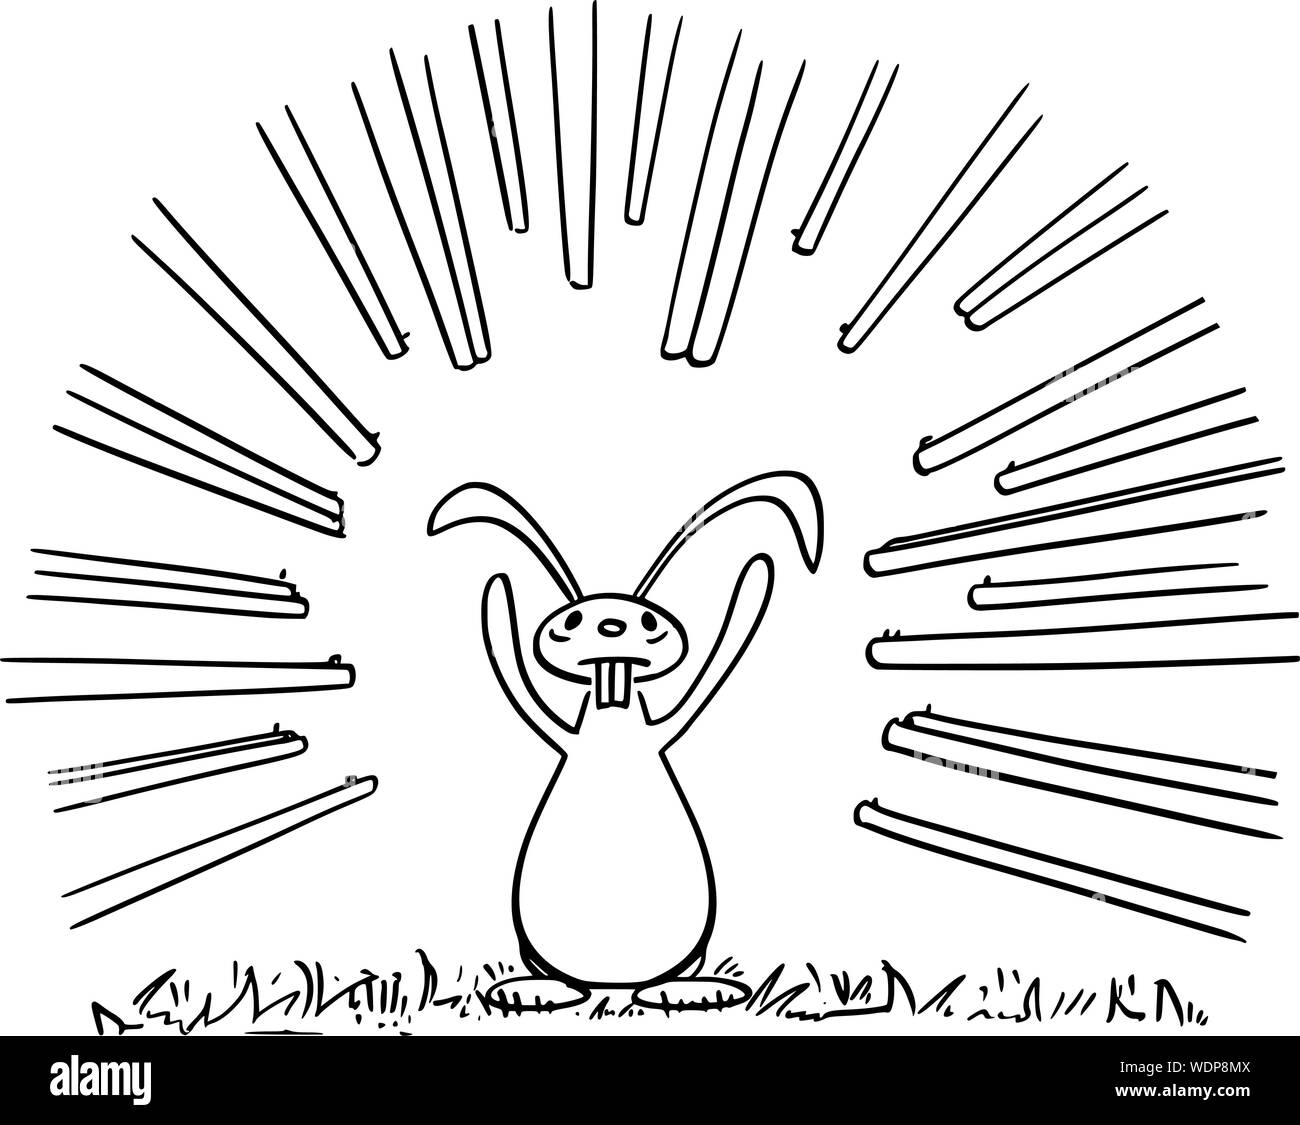 Vettore di disegno del fumetto illustrazione concettuale di coniglio o di lepre o jackrabbit con zampe o in alto le mani, si arrese quando deve affrontare molti riffles rivolti a lui o cacciatori. Illustrazione Vettoriale